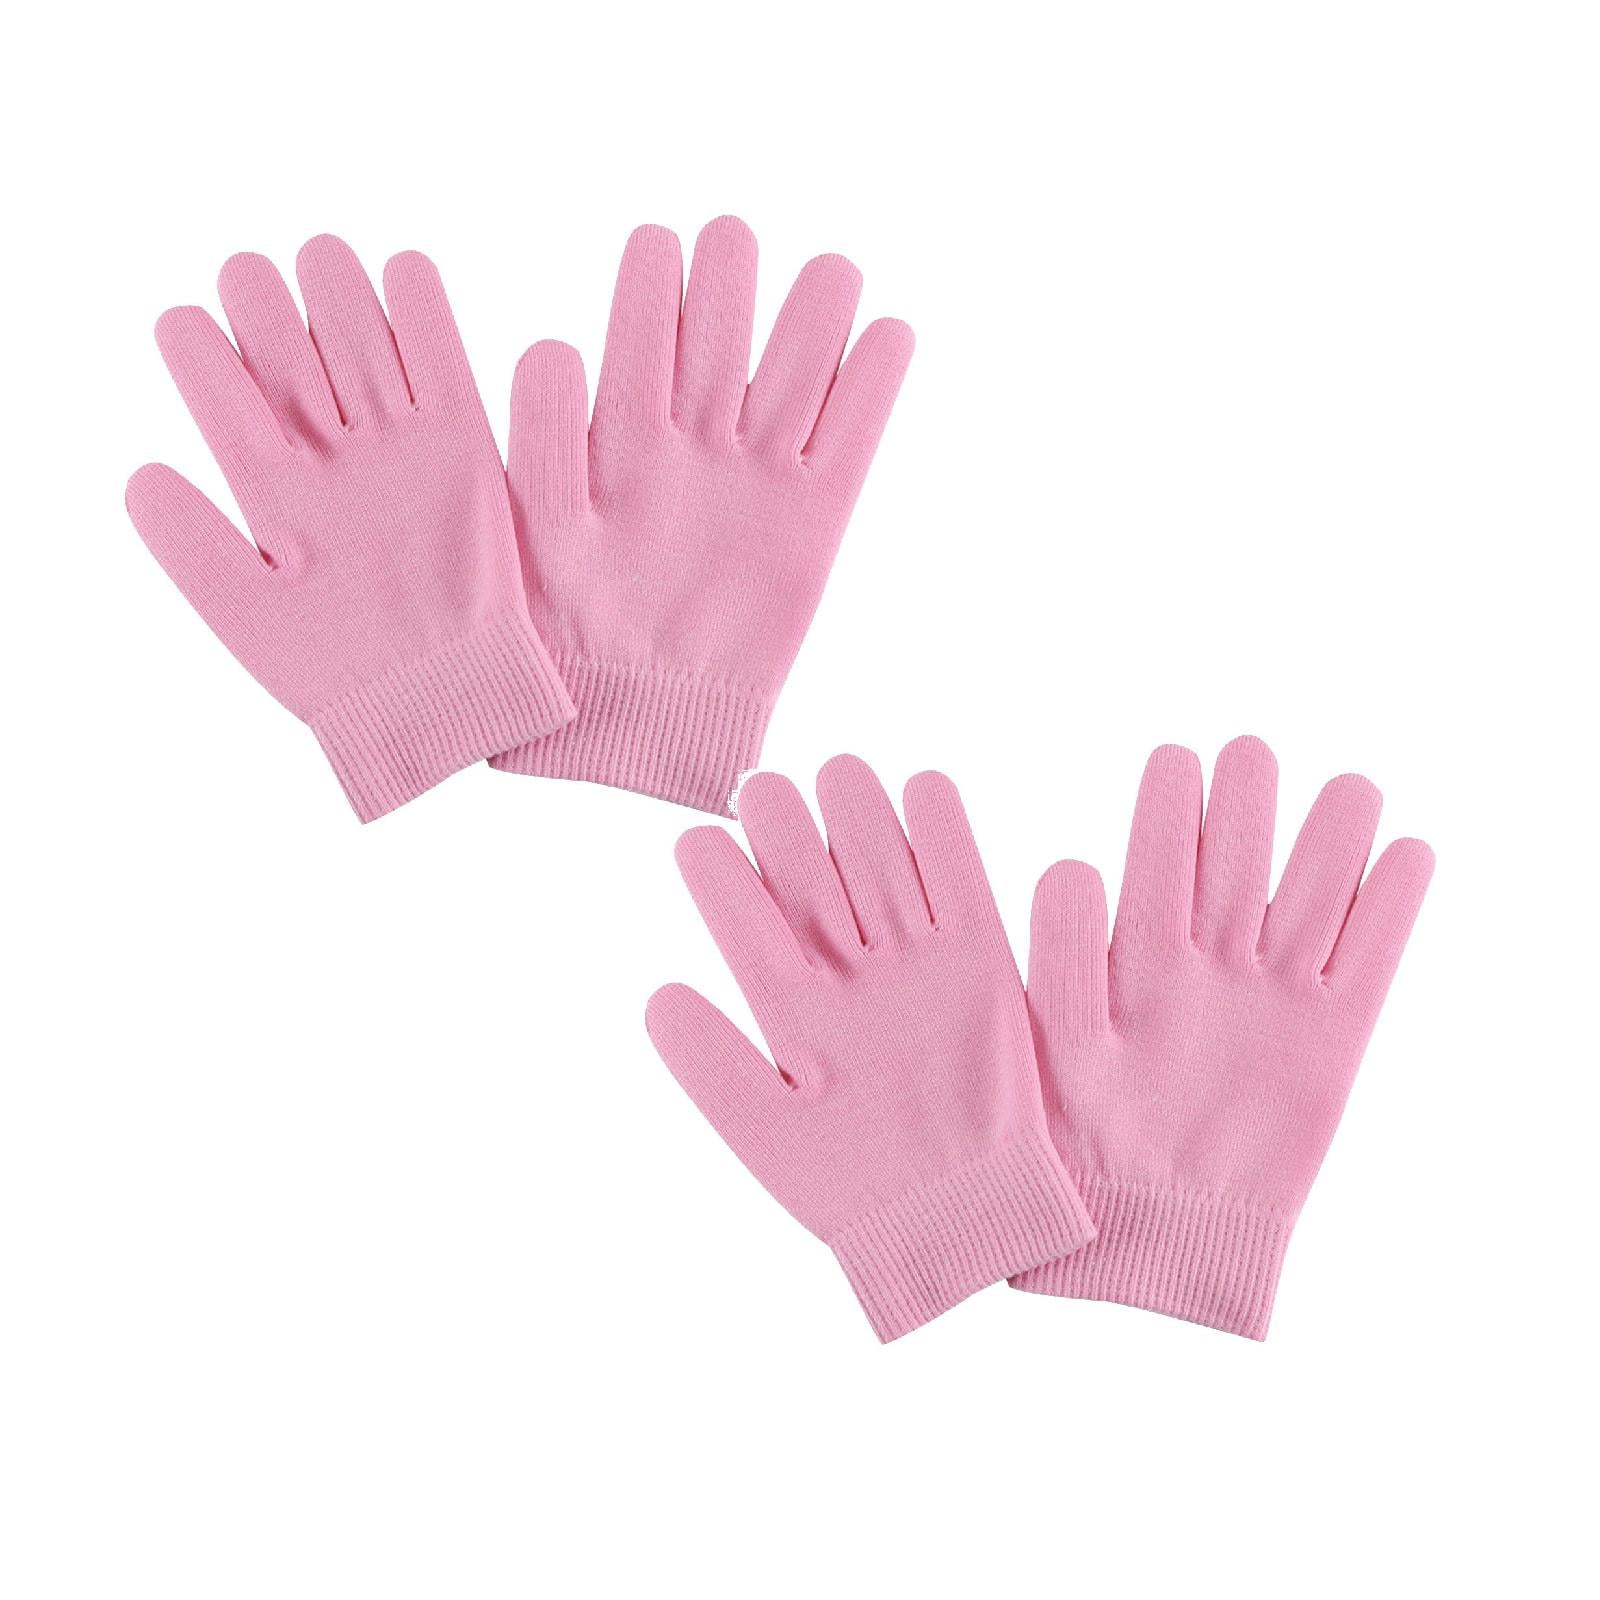 White Gel Gel Nail Polish Kit for Women, Moisturizing Gloves for Dry ...